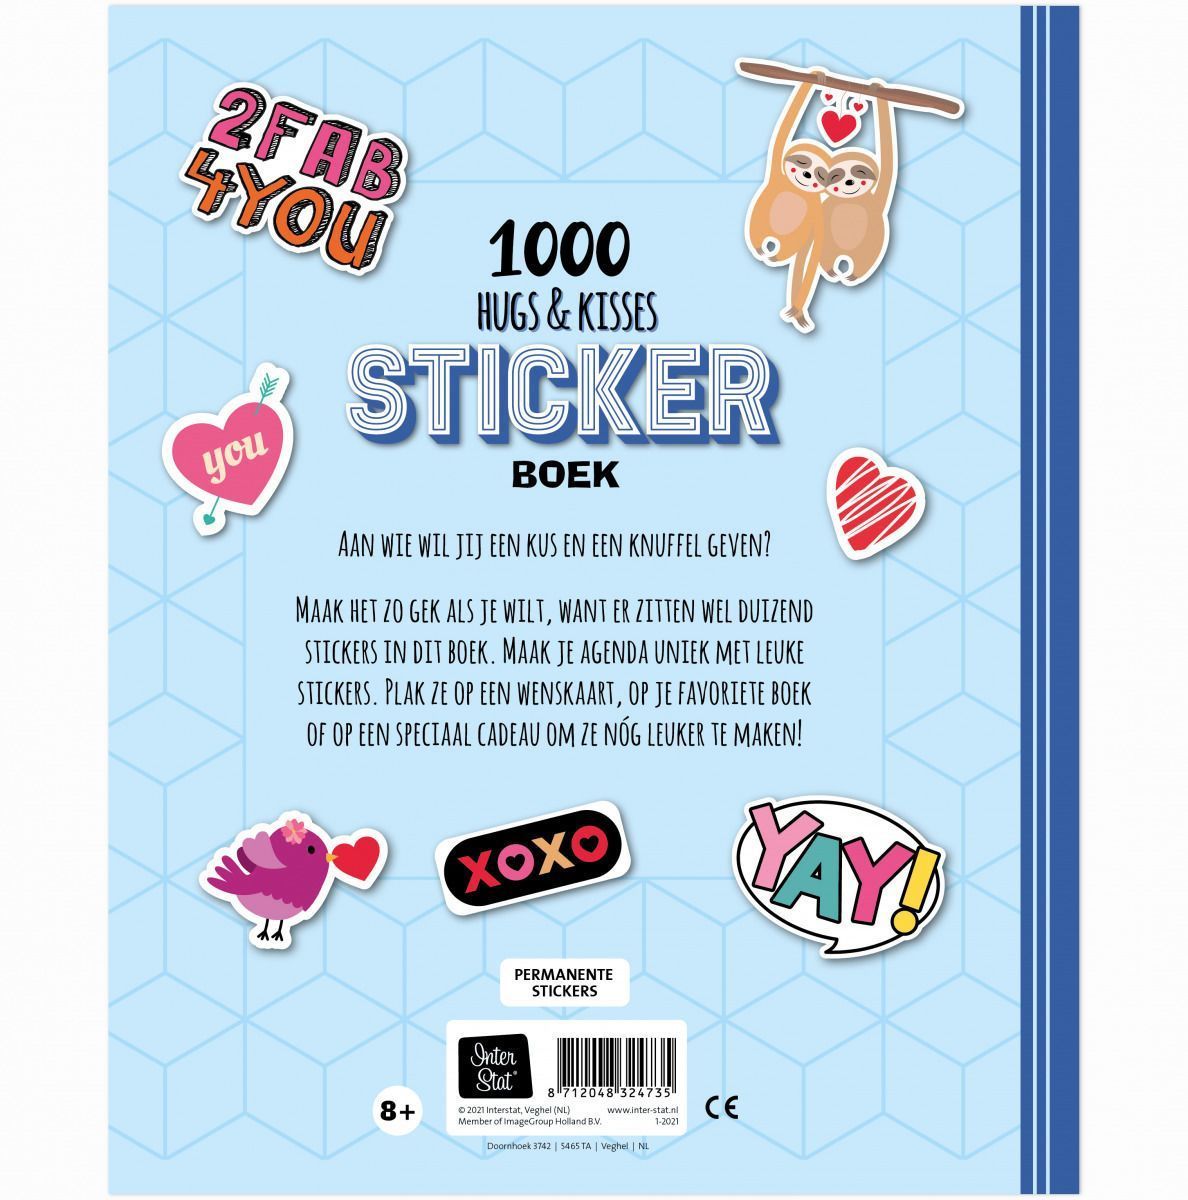 kin Bedrijfsomschrijving Wild Stickerboek - 1000 Hugs & Kisses Kopen? ⋆ Invulboekjes.nl